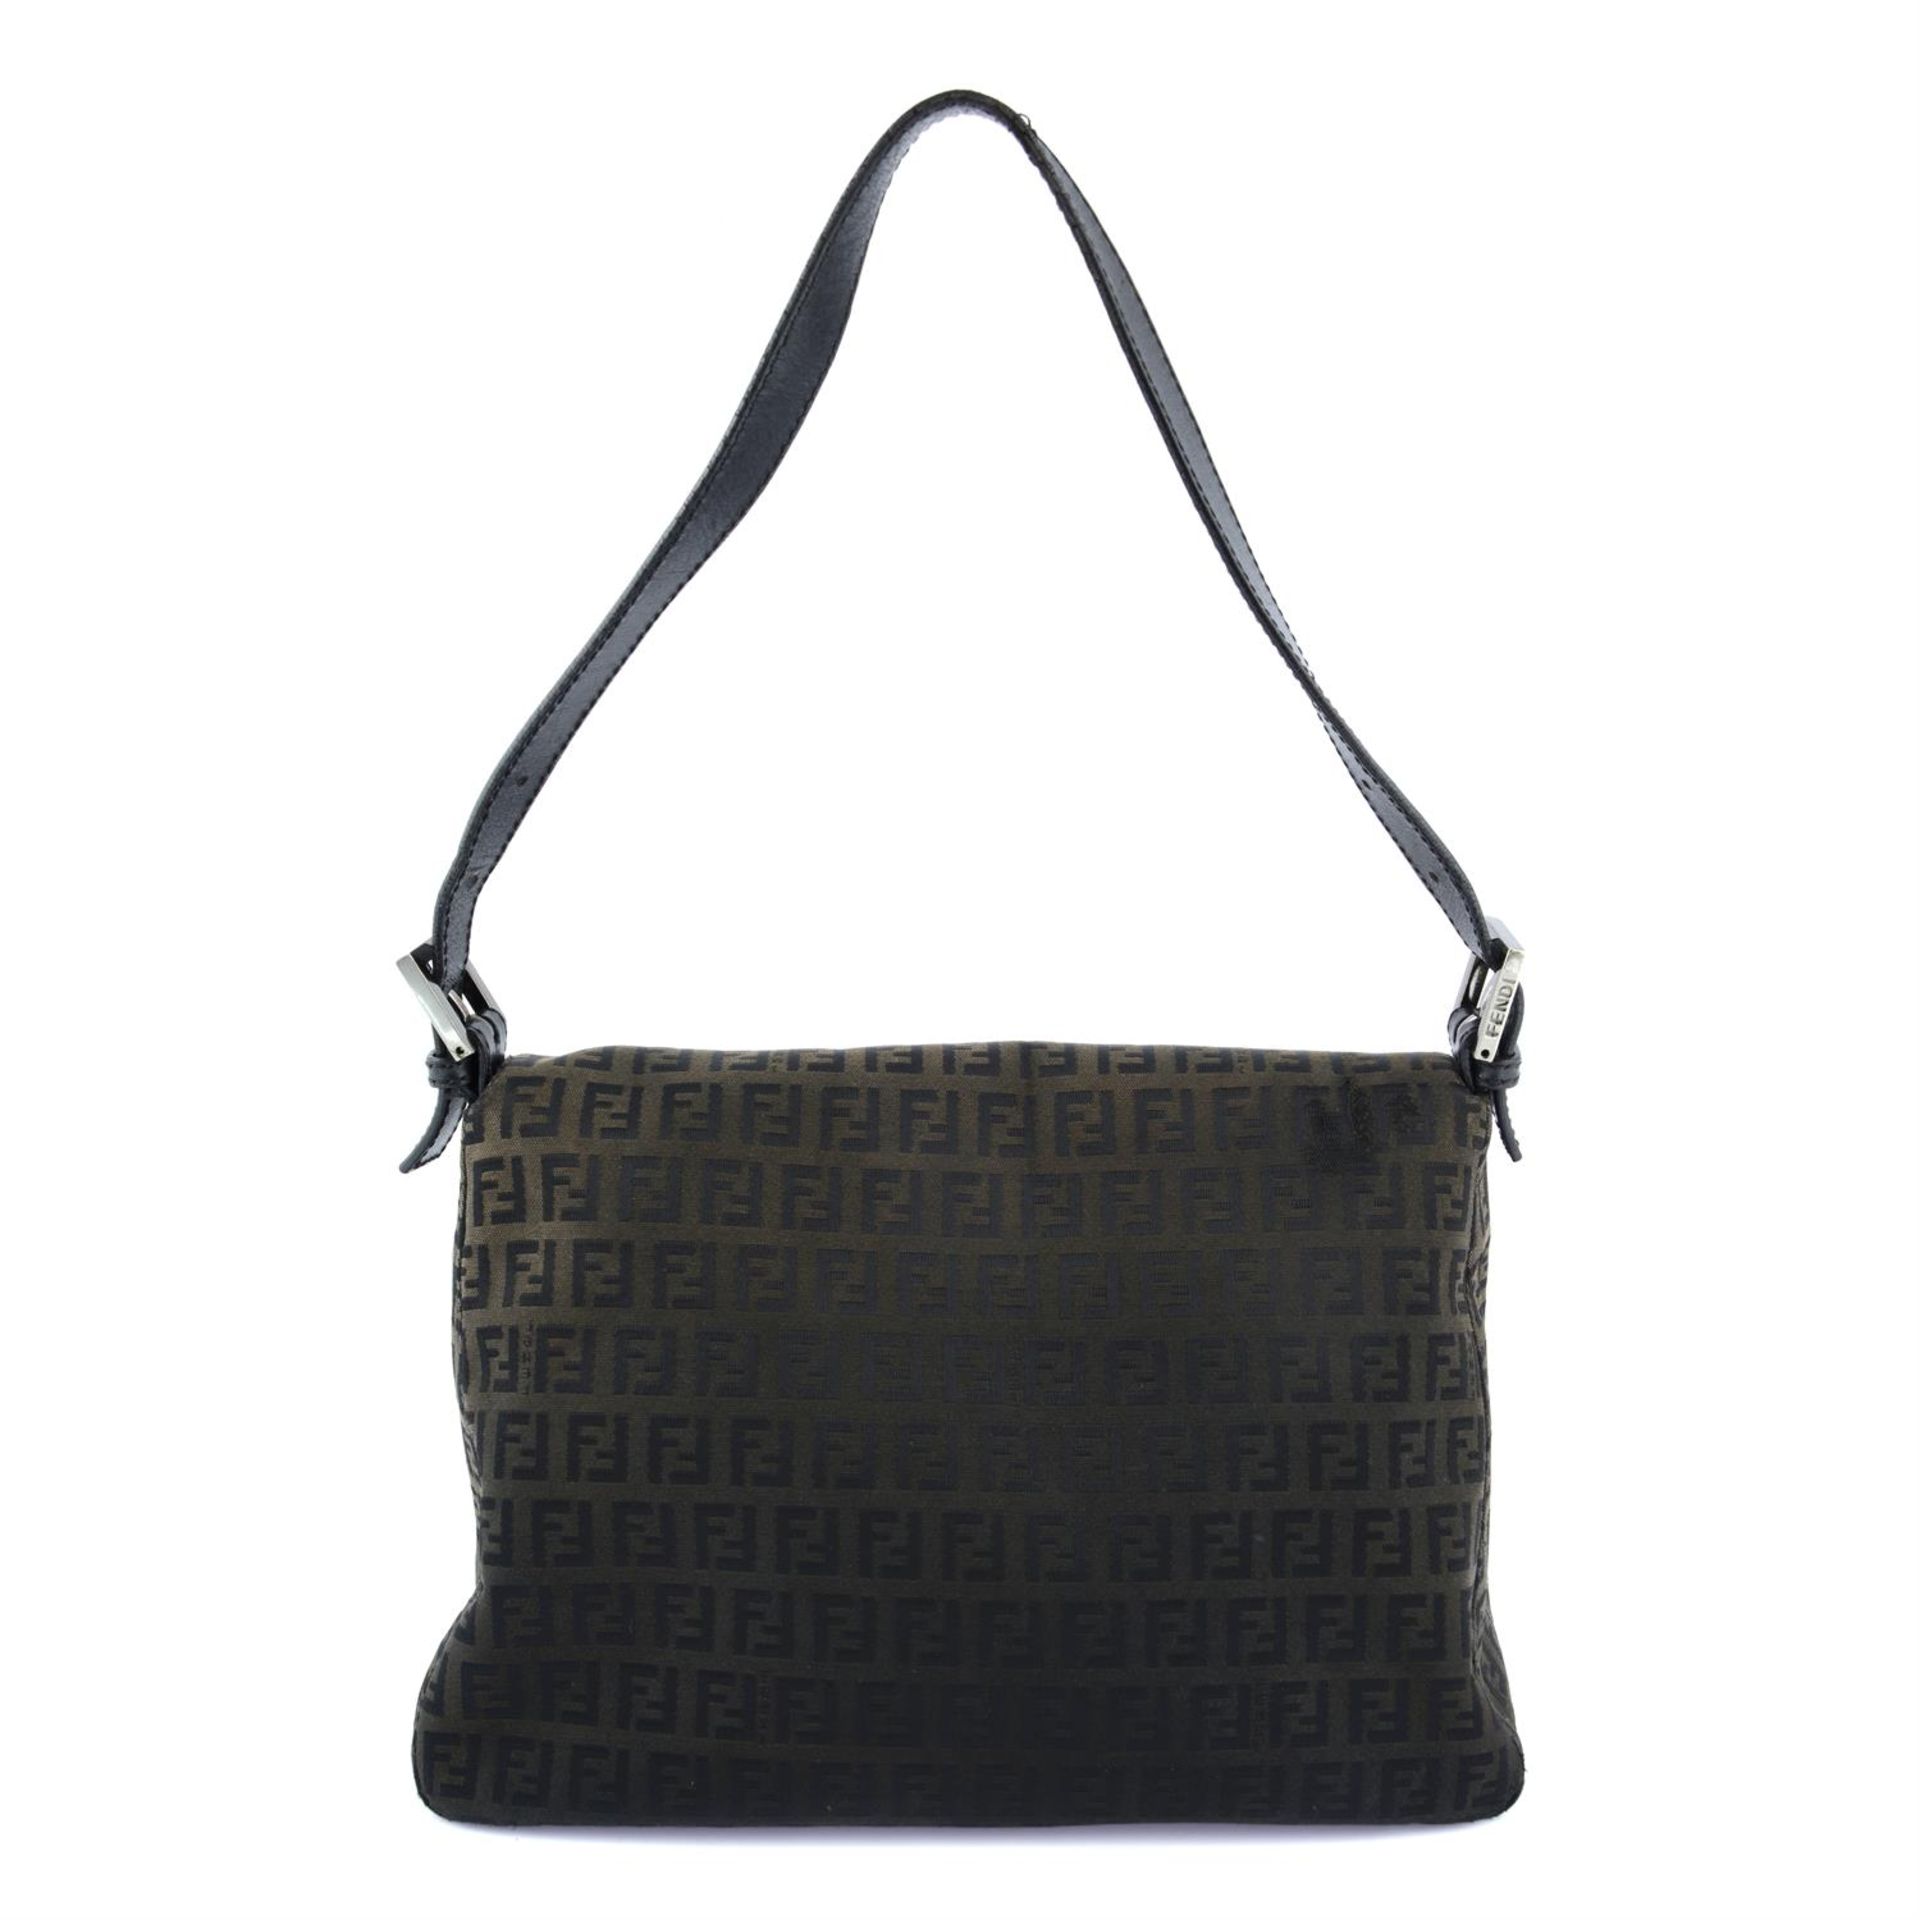 FENDI - a brown Mama Baguette handbag. - Image 2 of 4